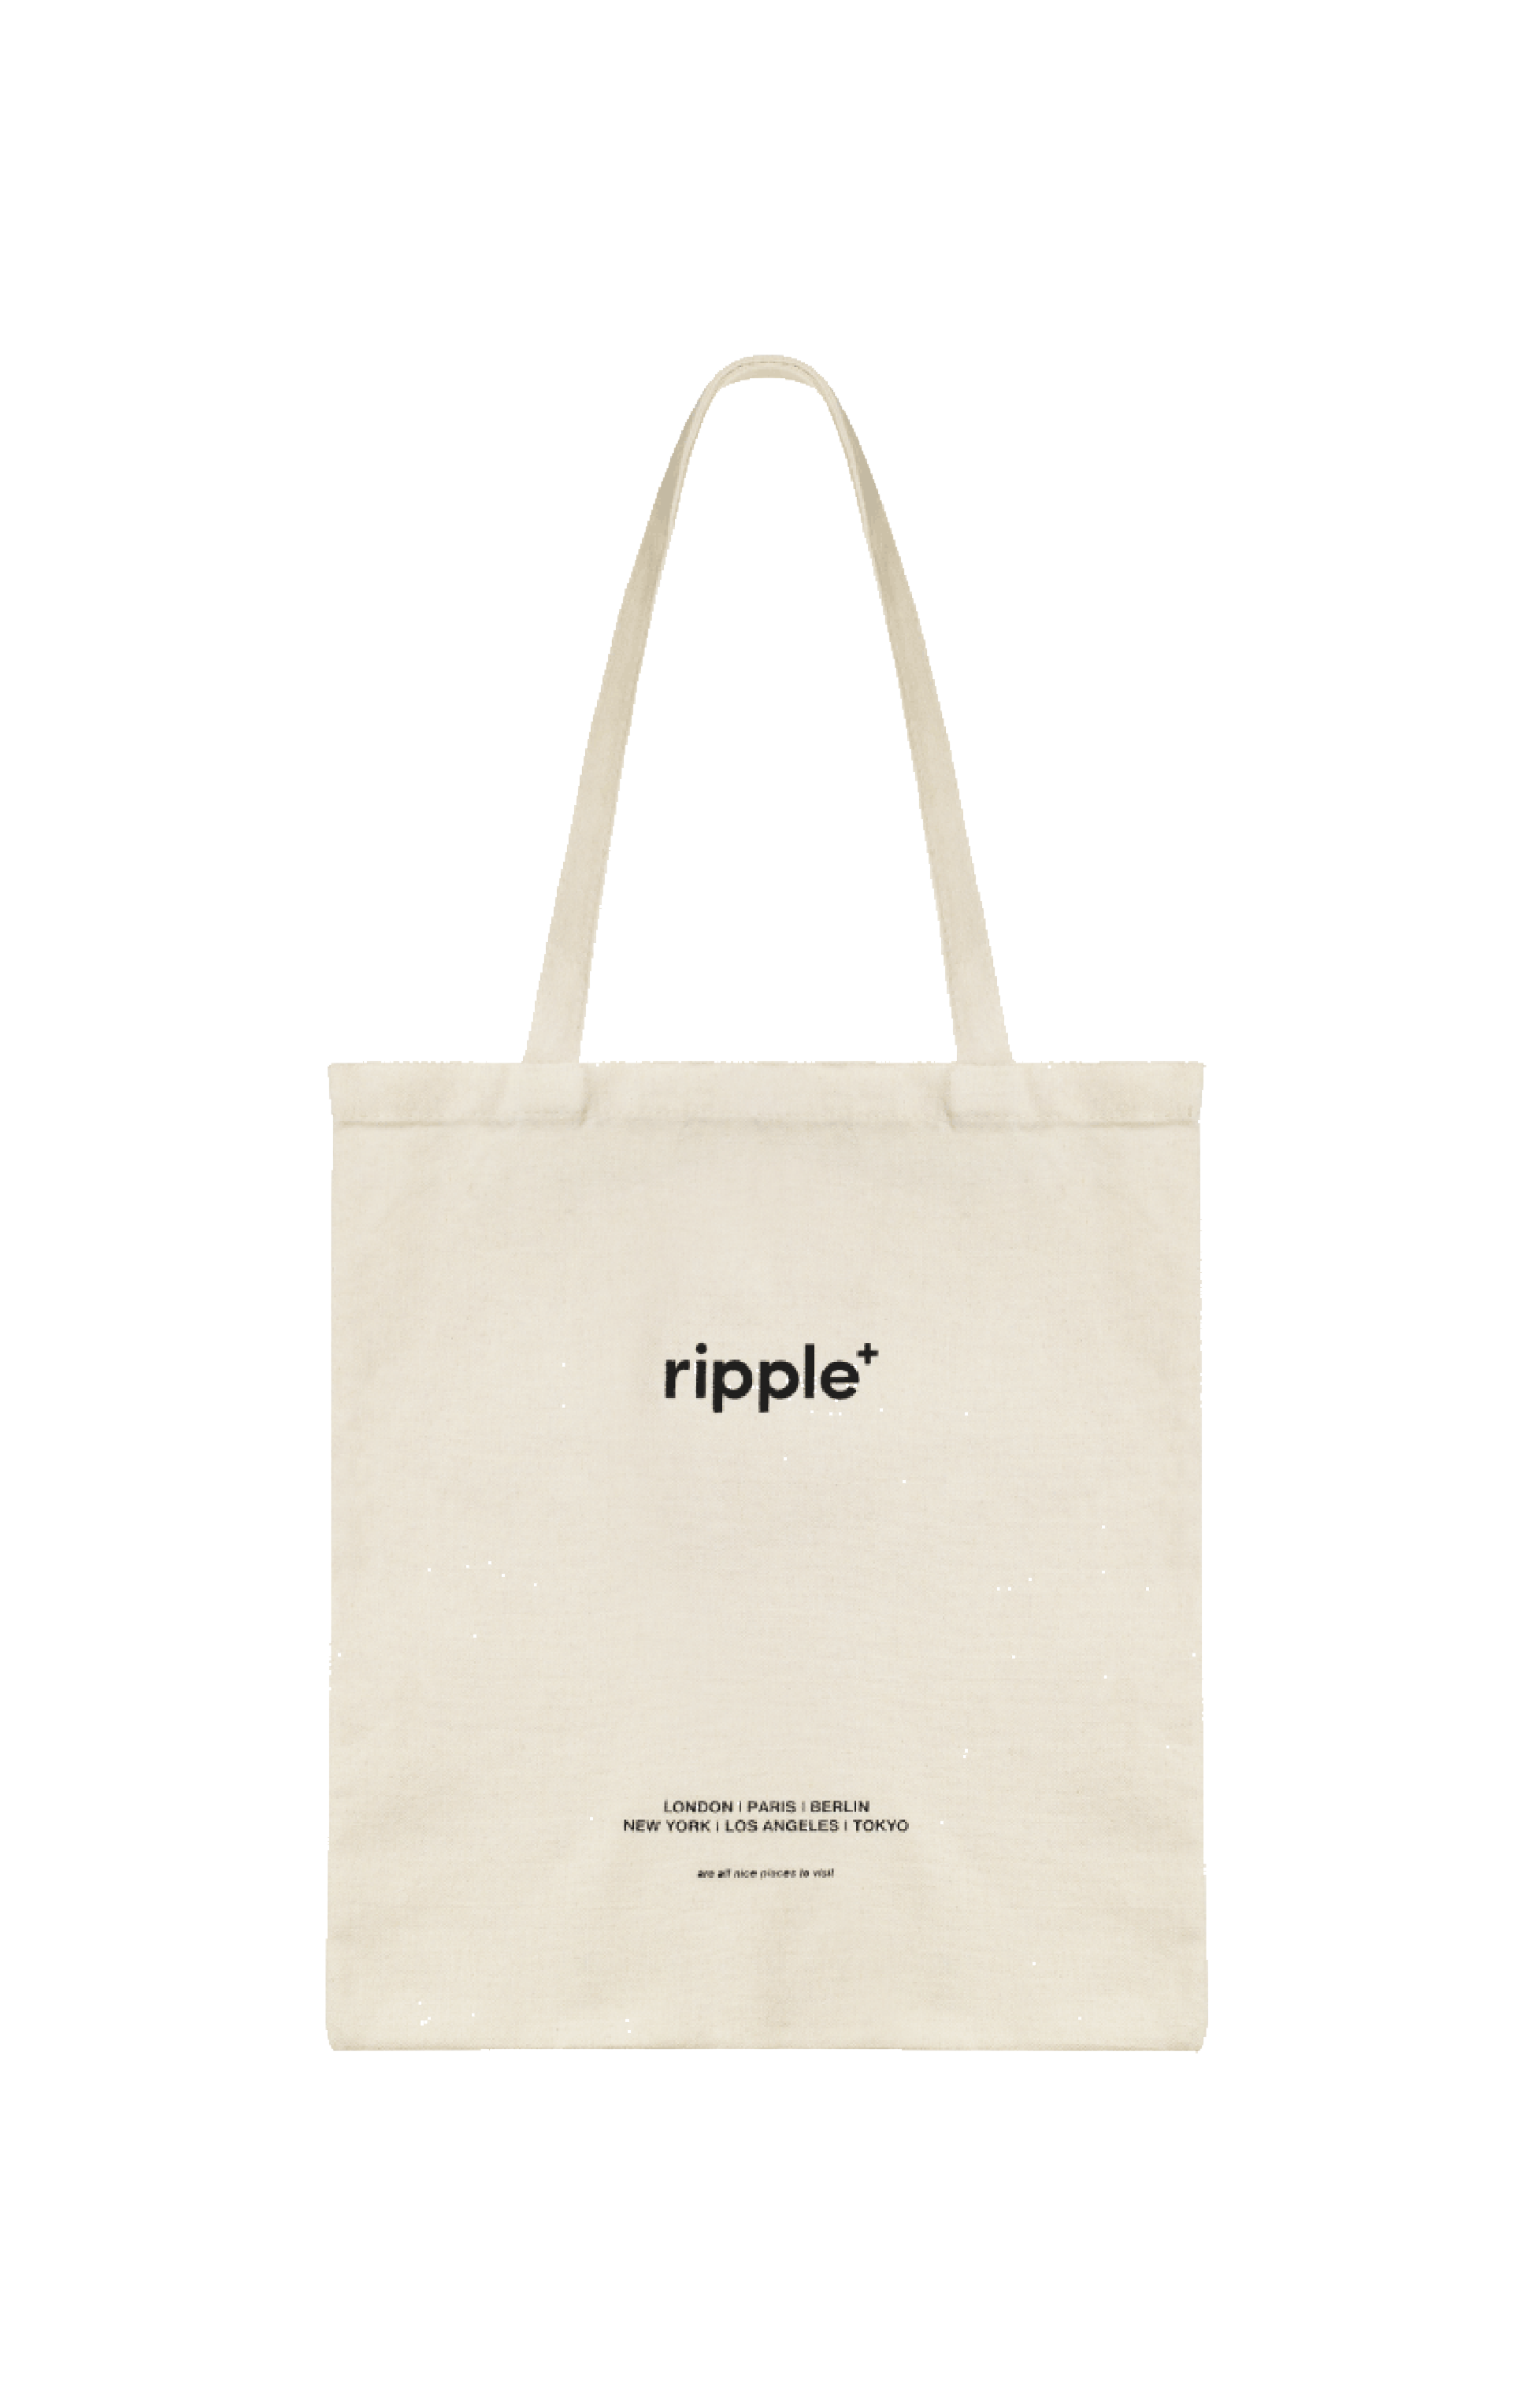 Ripple’s Cream Canvas Tote Bag